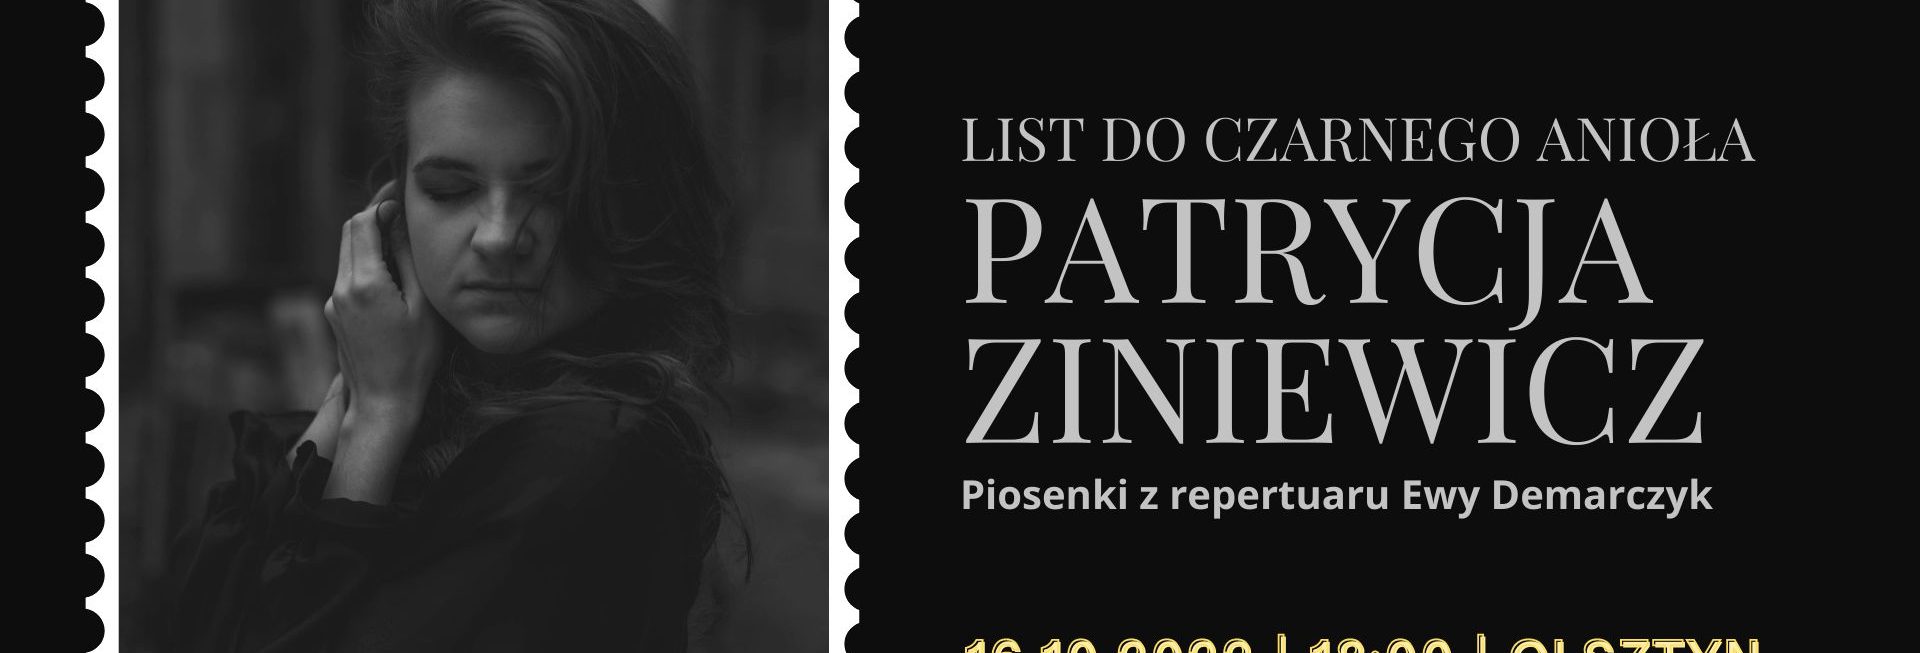 Plakat zapraszający do Olsztyna na koncert Patrycja Zieniewicz - Piosenki Ewy Demarczyk Olsztyn 2022.